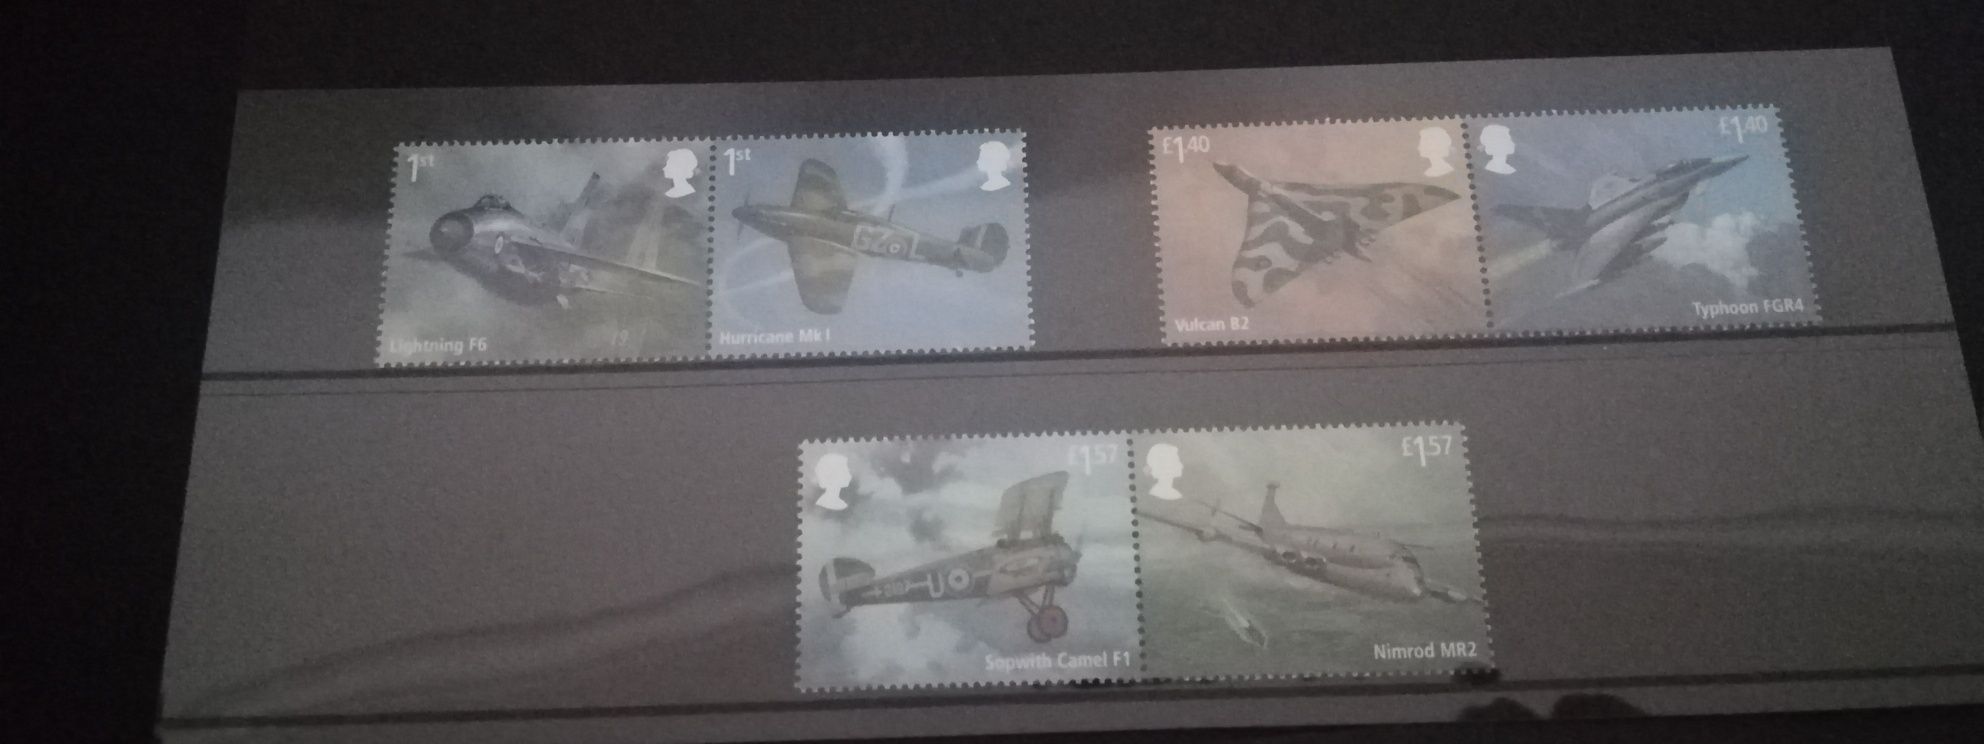 Selos sobre o Centenário Força Aérea Britânica (RAF) (Novo)